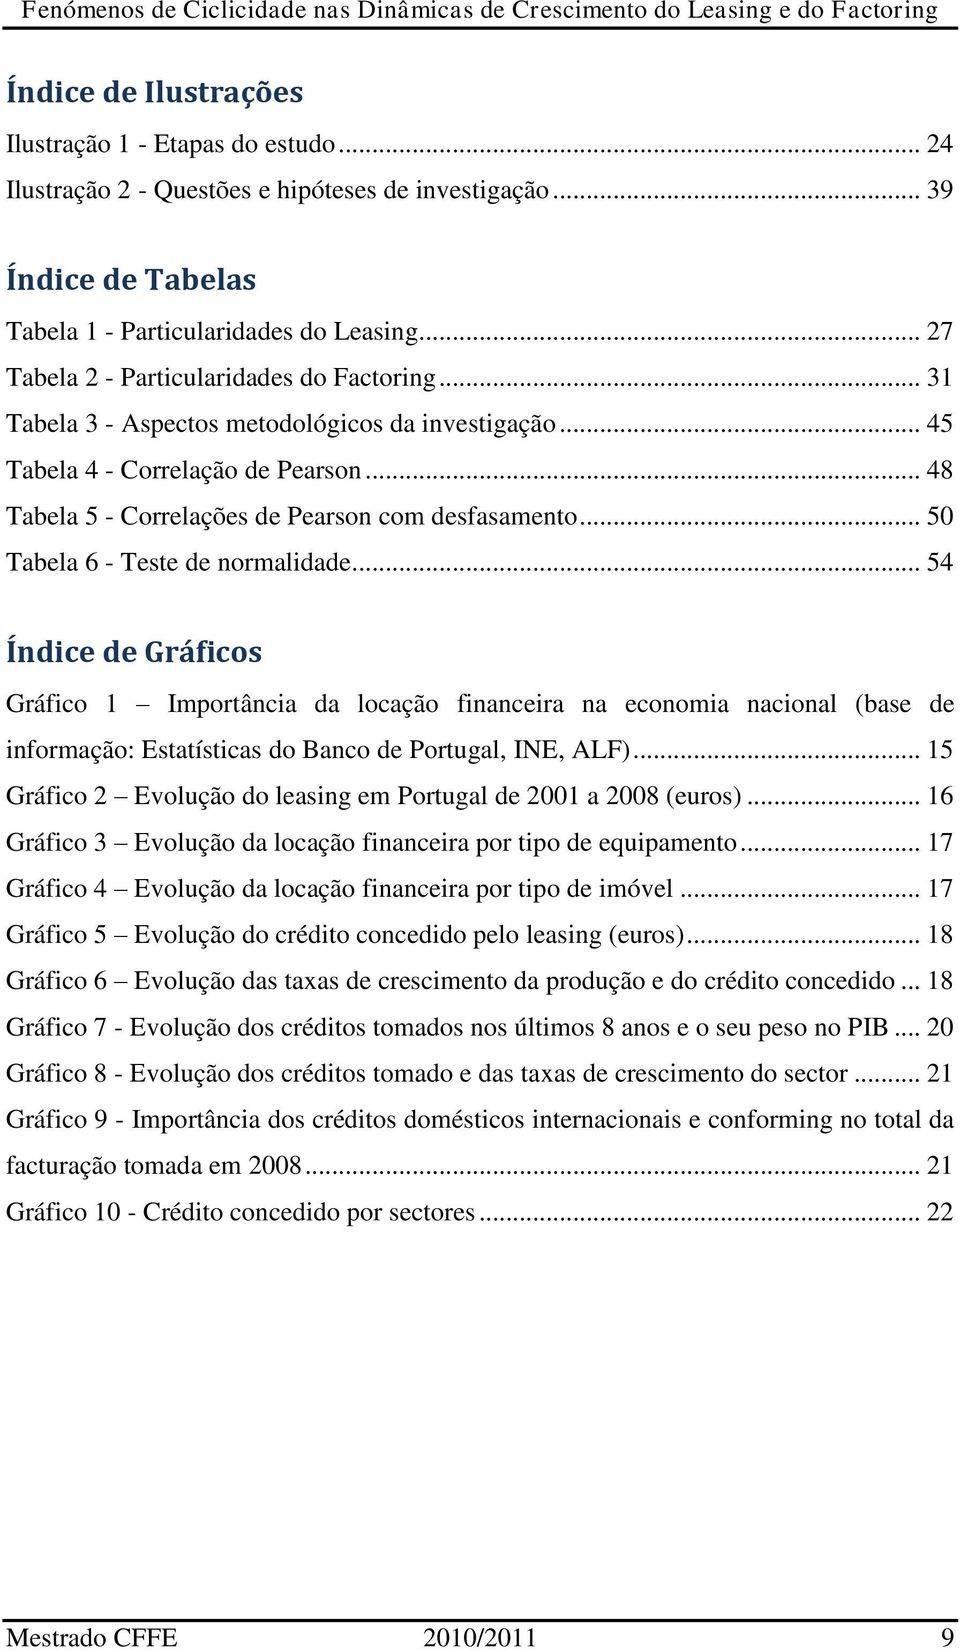 .. 50 Tabela 6 - Teste de normalidade... 54 Índice de Gráficos Gráfico 1 Importância da locação financeira na economia nacional (base de informação: Estatísticas do Banco de Portugal, INE, ALF).